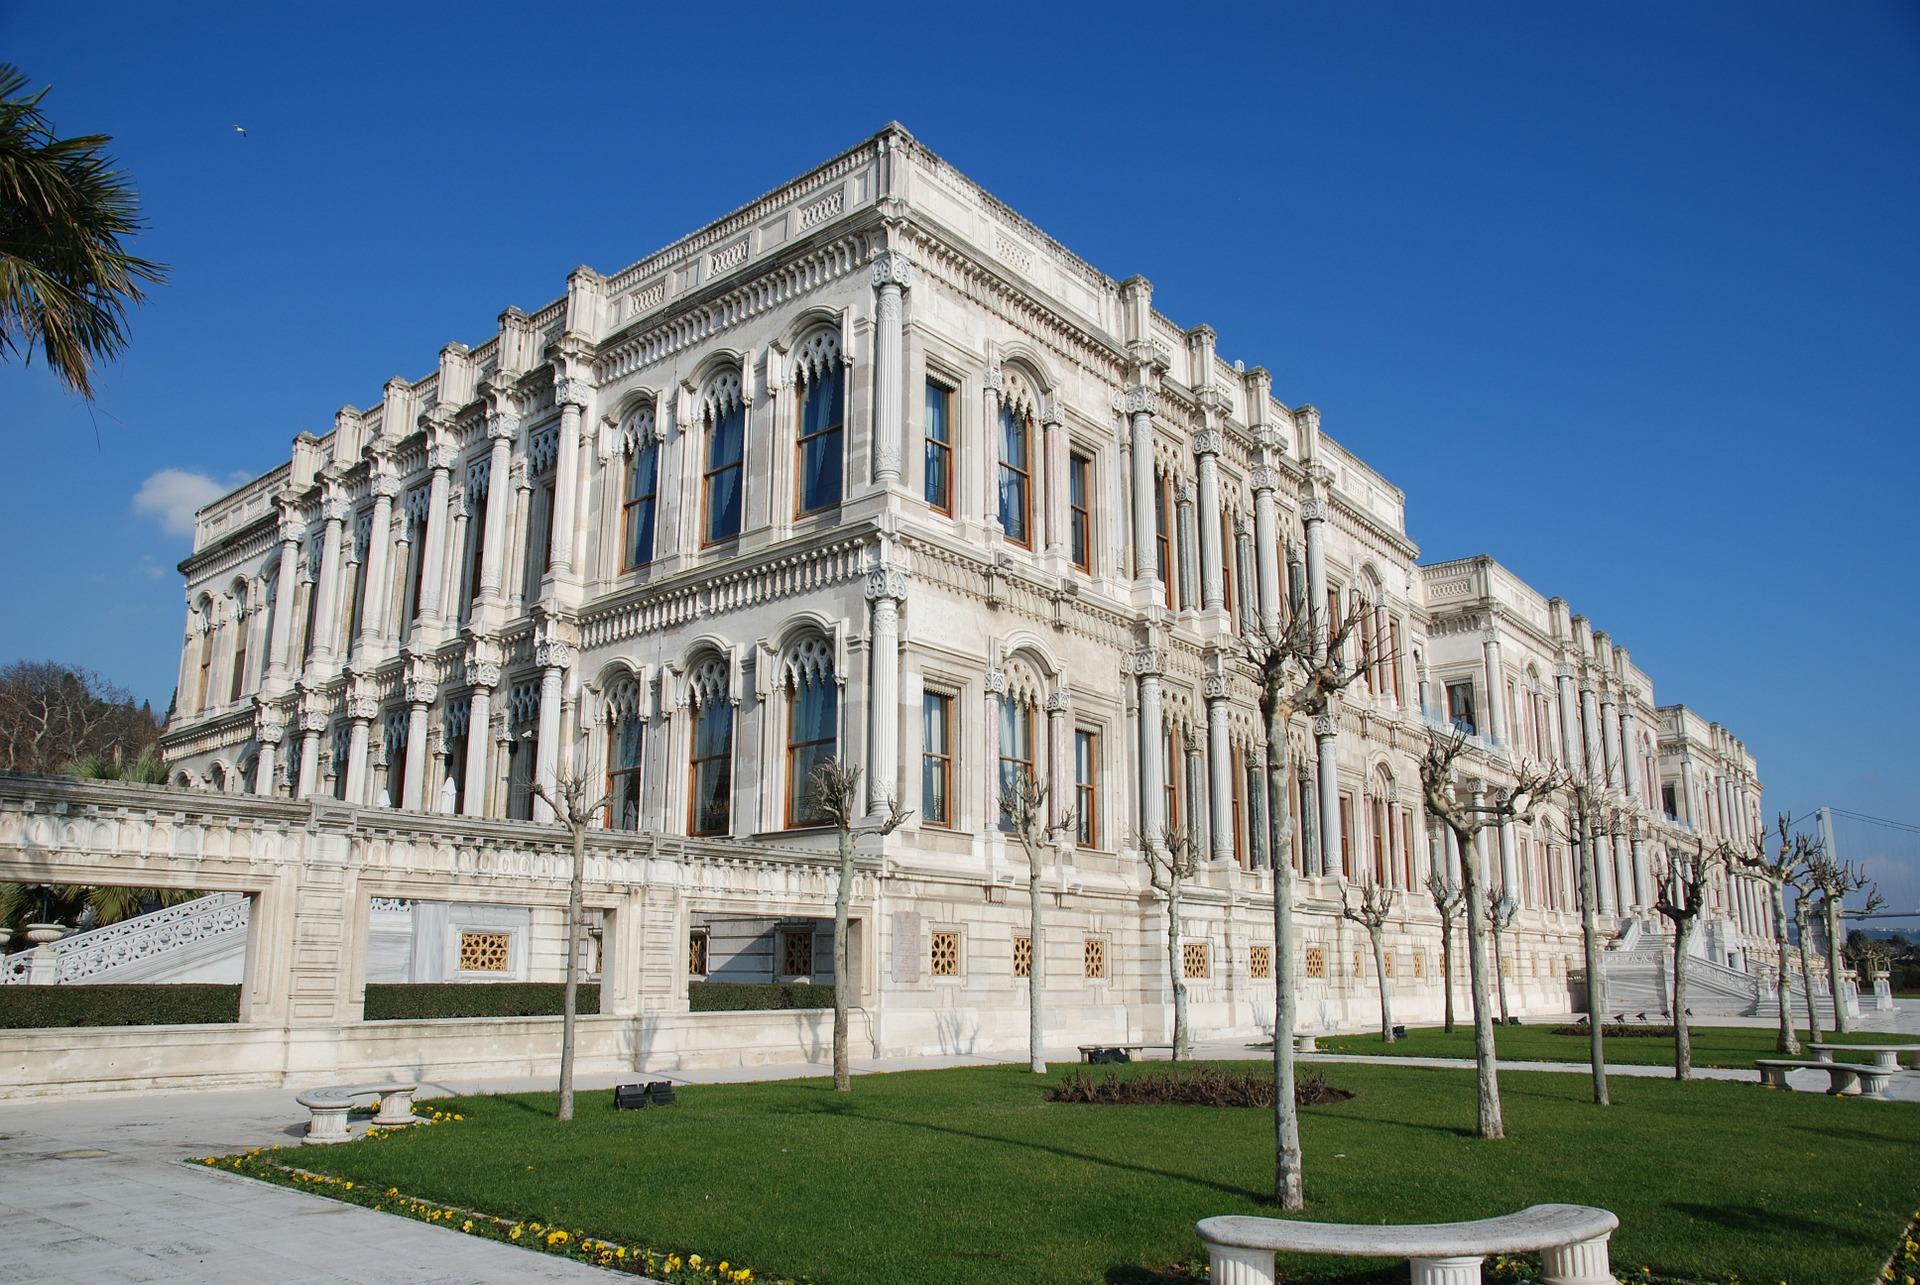 Çırağan (Ciragan) Palace, Istanbul, Turkey